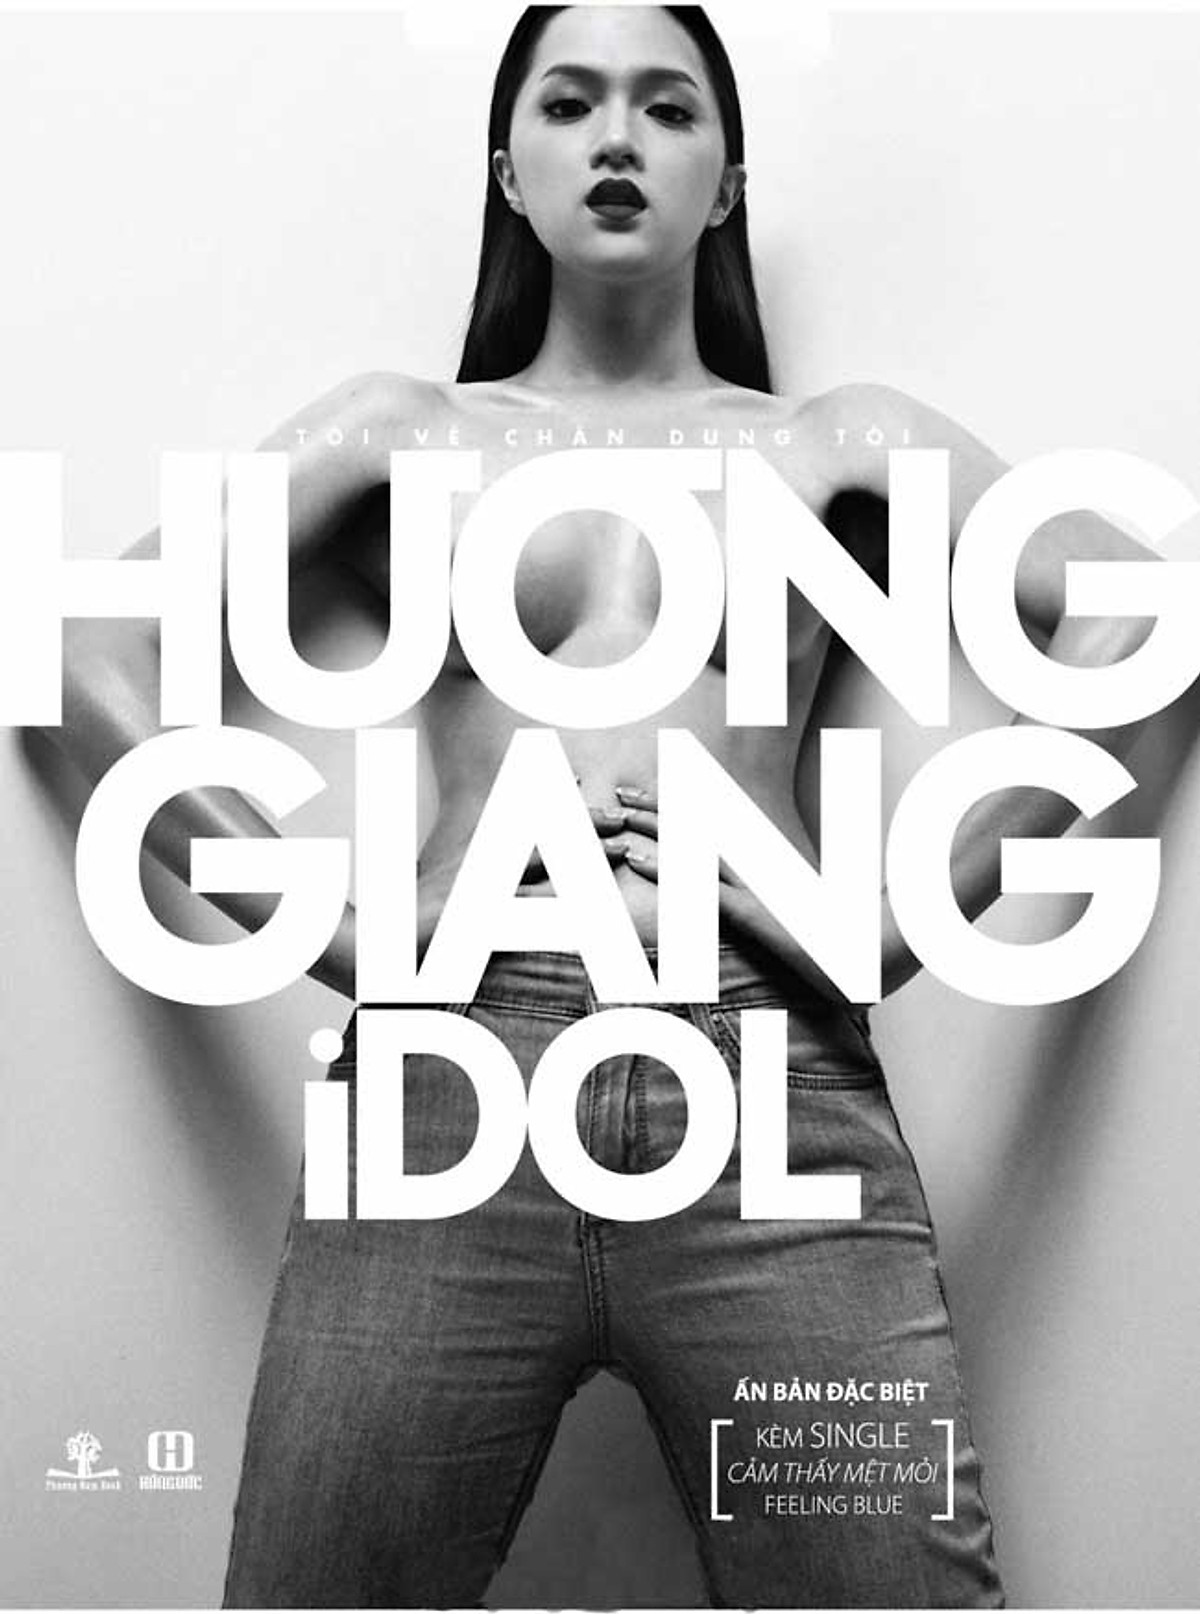 Hương Giang Idol - Tôi Vẽ Chân Dung Tôi (Ấn Bản Đặc Biệt Kèm CD)